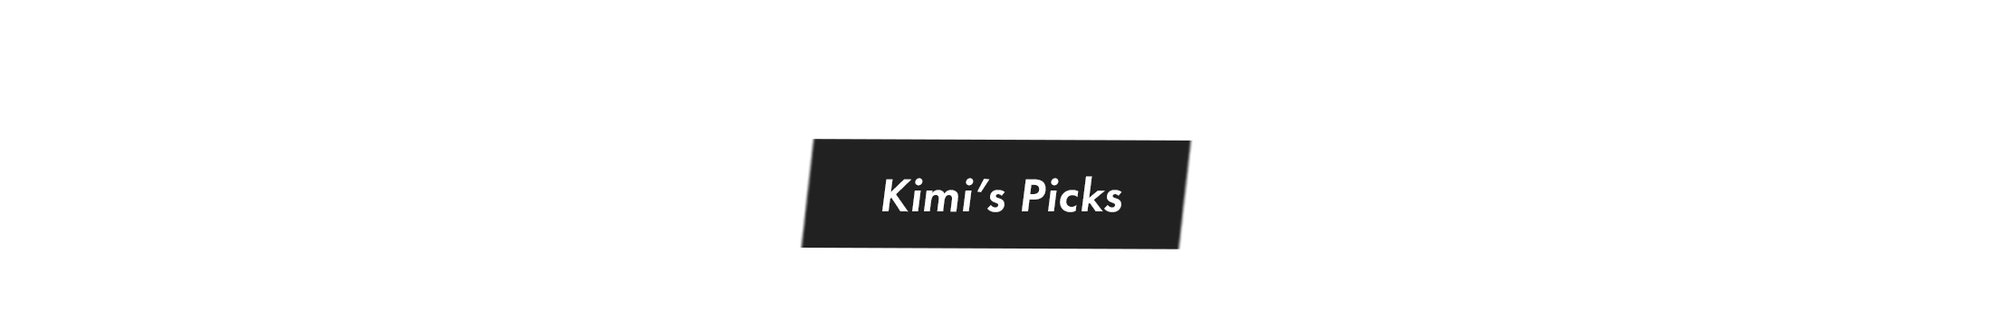 Kimi's Picks